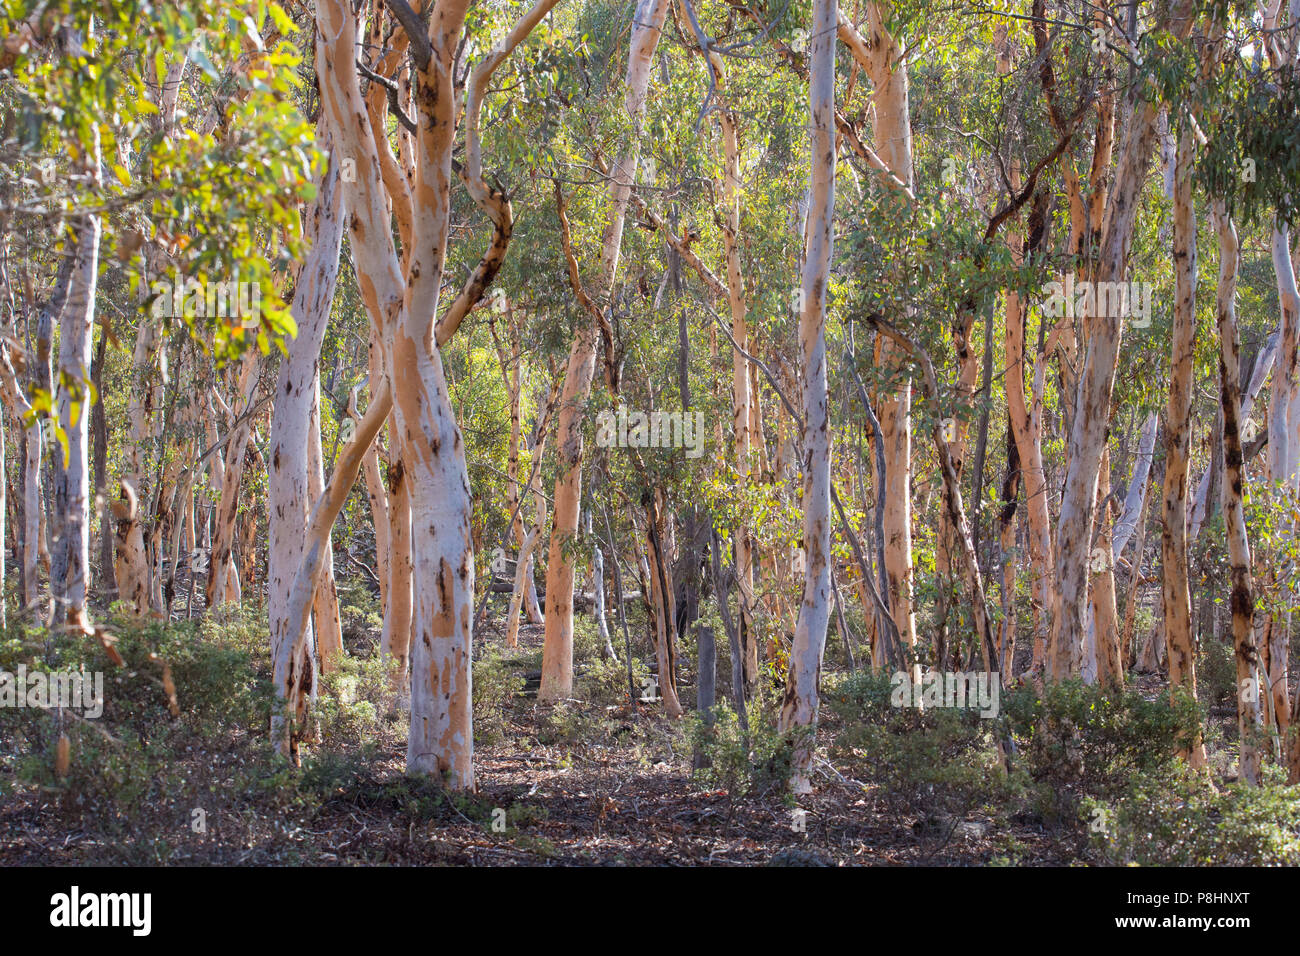 Eucalyptus wandoo woodland (wandoo) dans la forêt d'état de Dryandra, Australie occidentale Banque D'Images